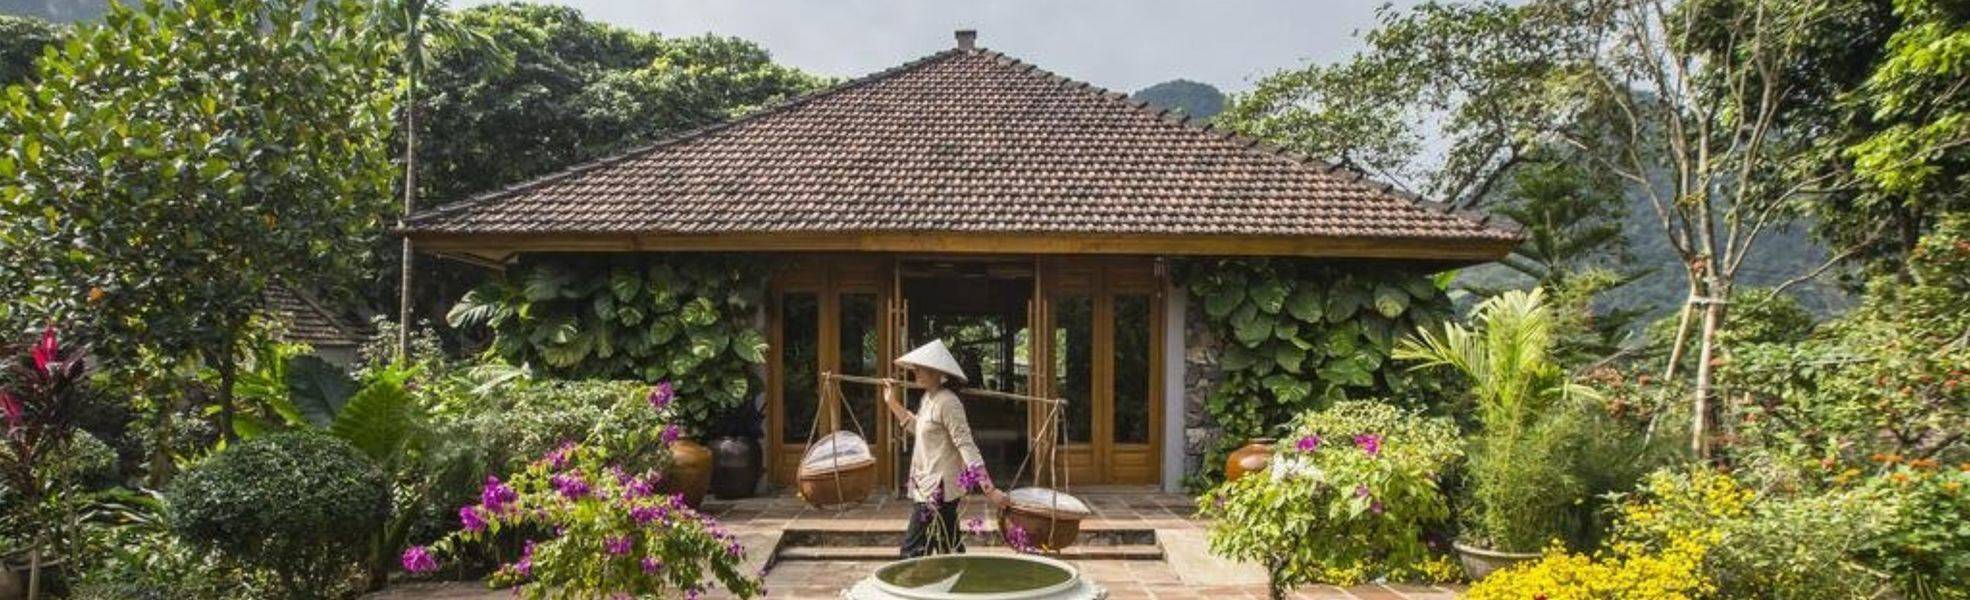 Freiwilligenarbeit in Vietnam mit Rainbow Garden Village